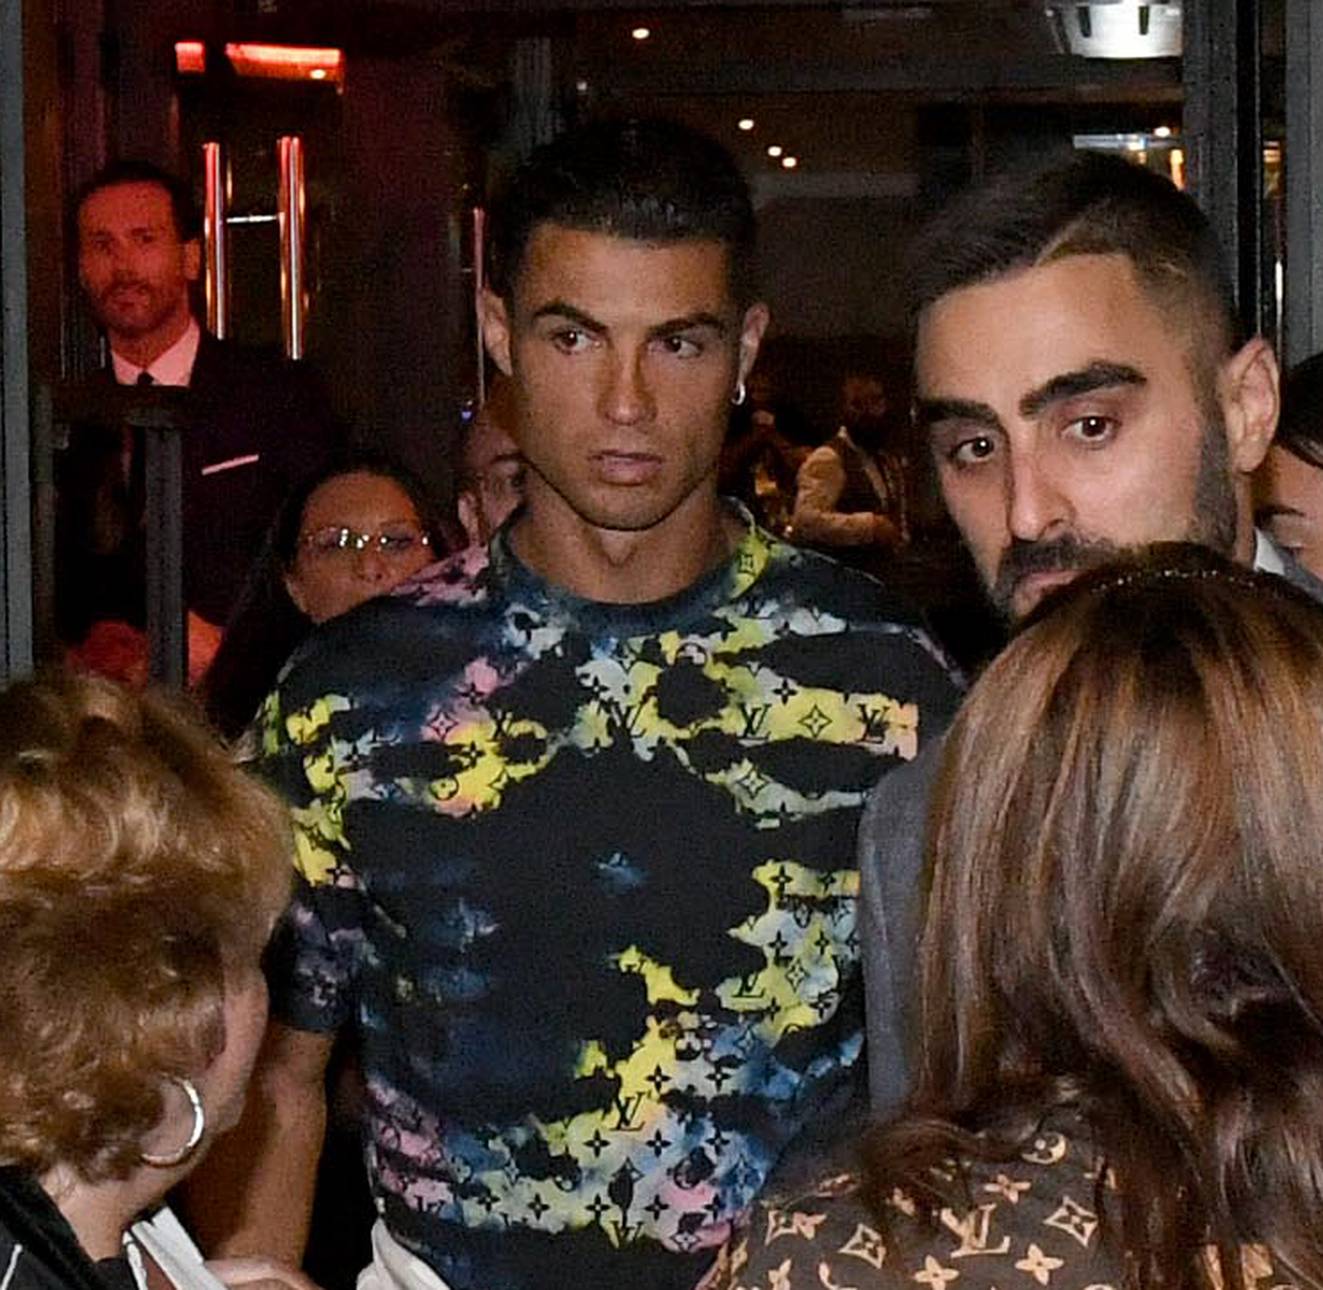 Ronaldo out for Dinner